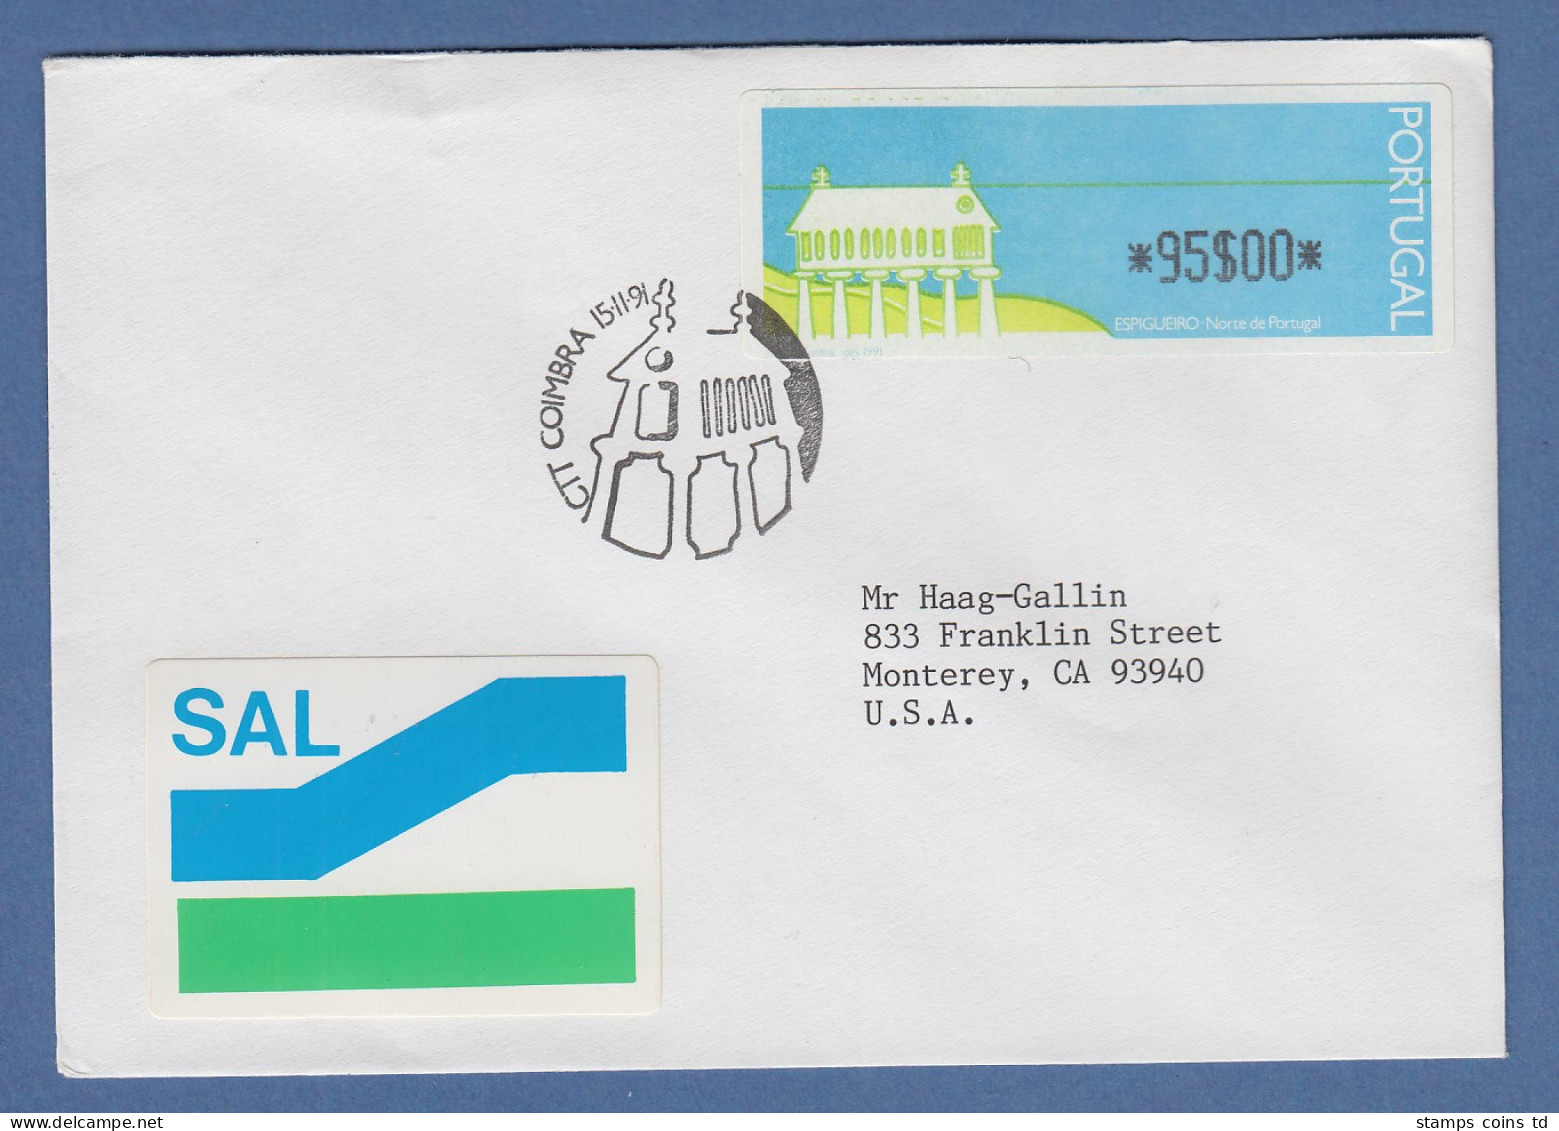 Portugal 1991 ATM Espigueiro Mi.-Nr. 3 Wert 95$00 Auf SAL -> USA ET-O Coimbra - Vignette [ATM]